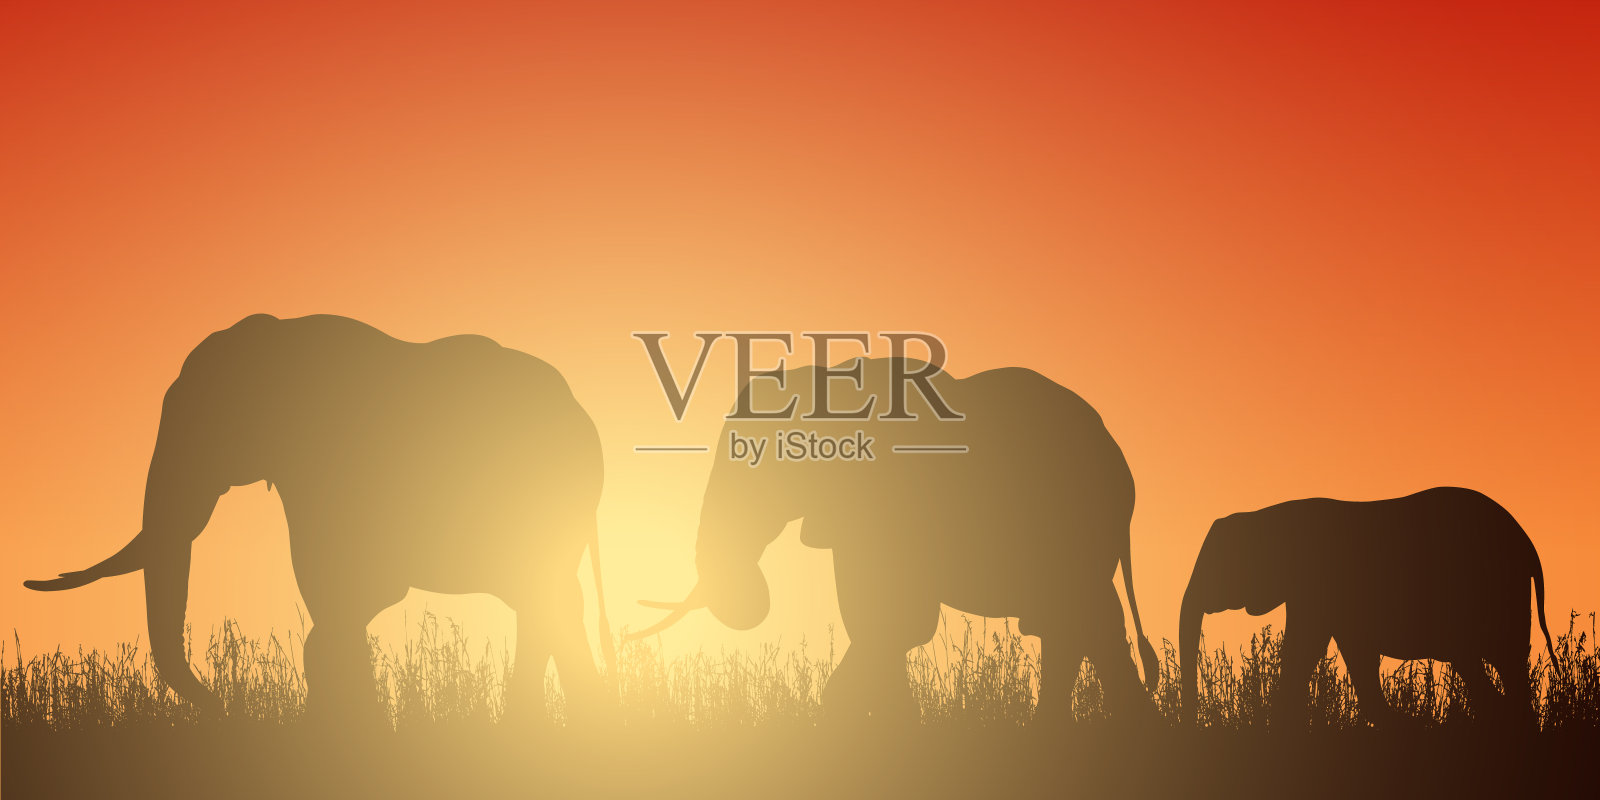 现实插图与剪影的三只大象在非洲狩猎。草和红橙色的天空与升起的太阳向量插画图片素材